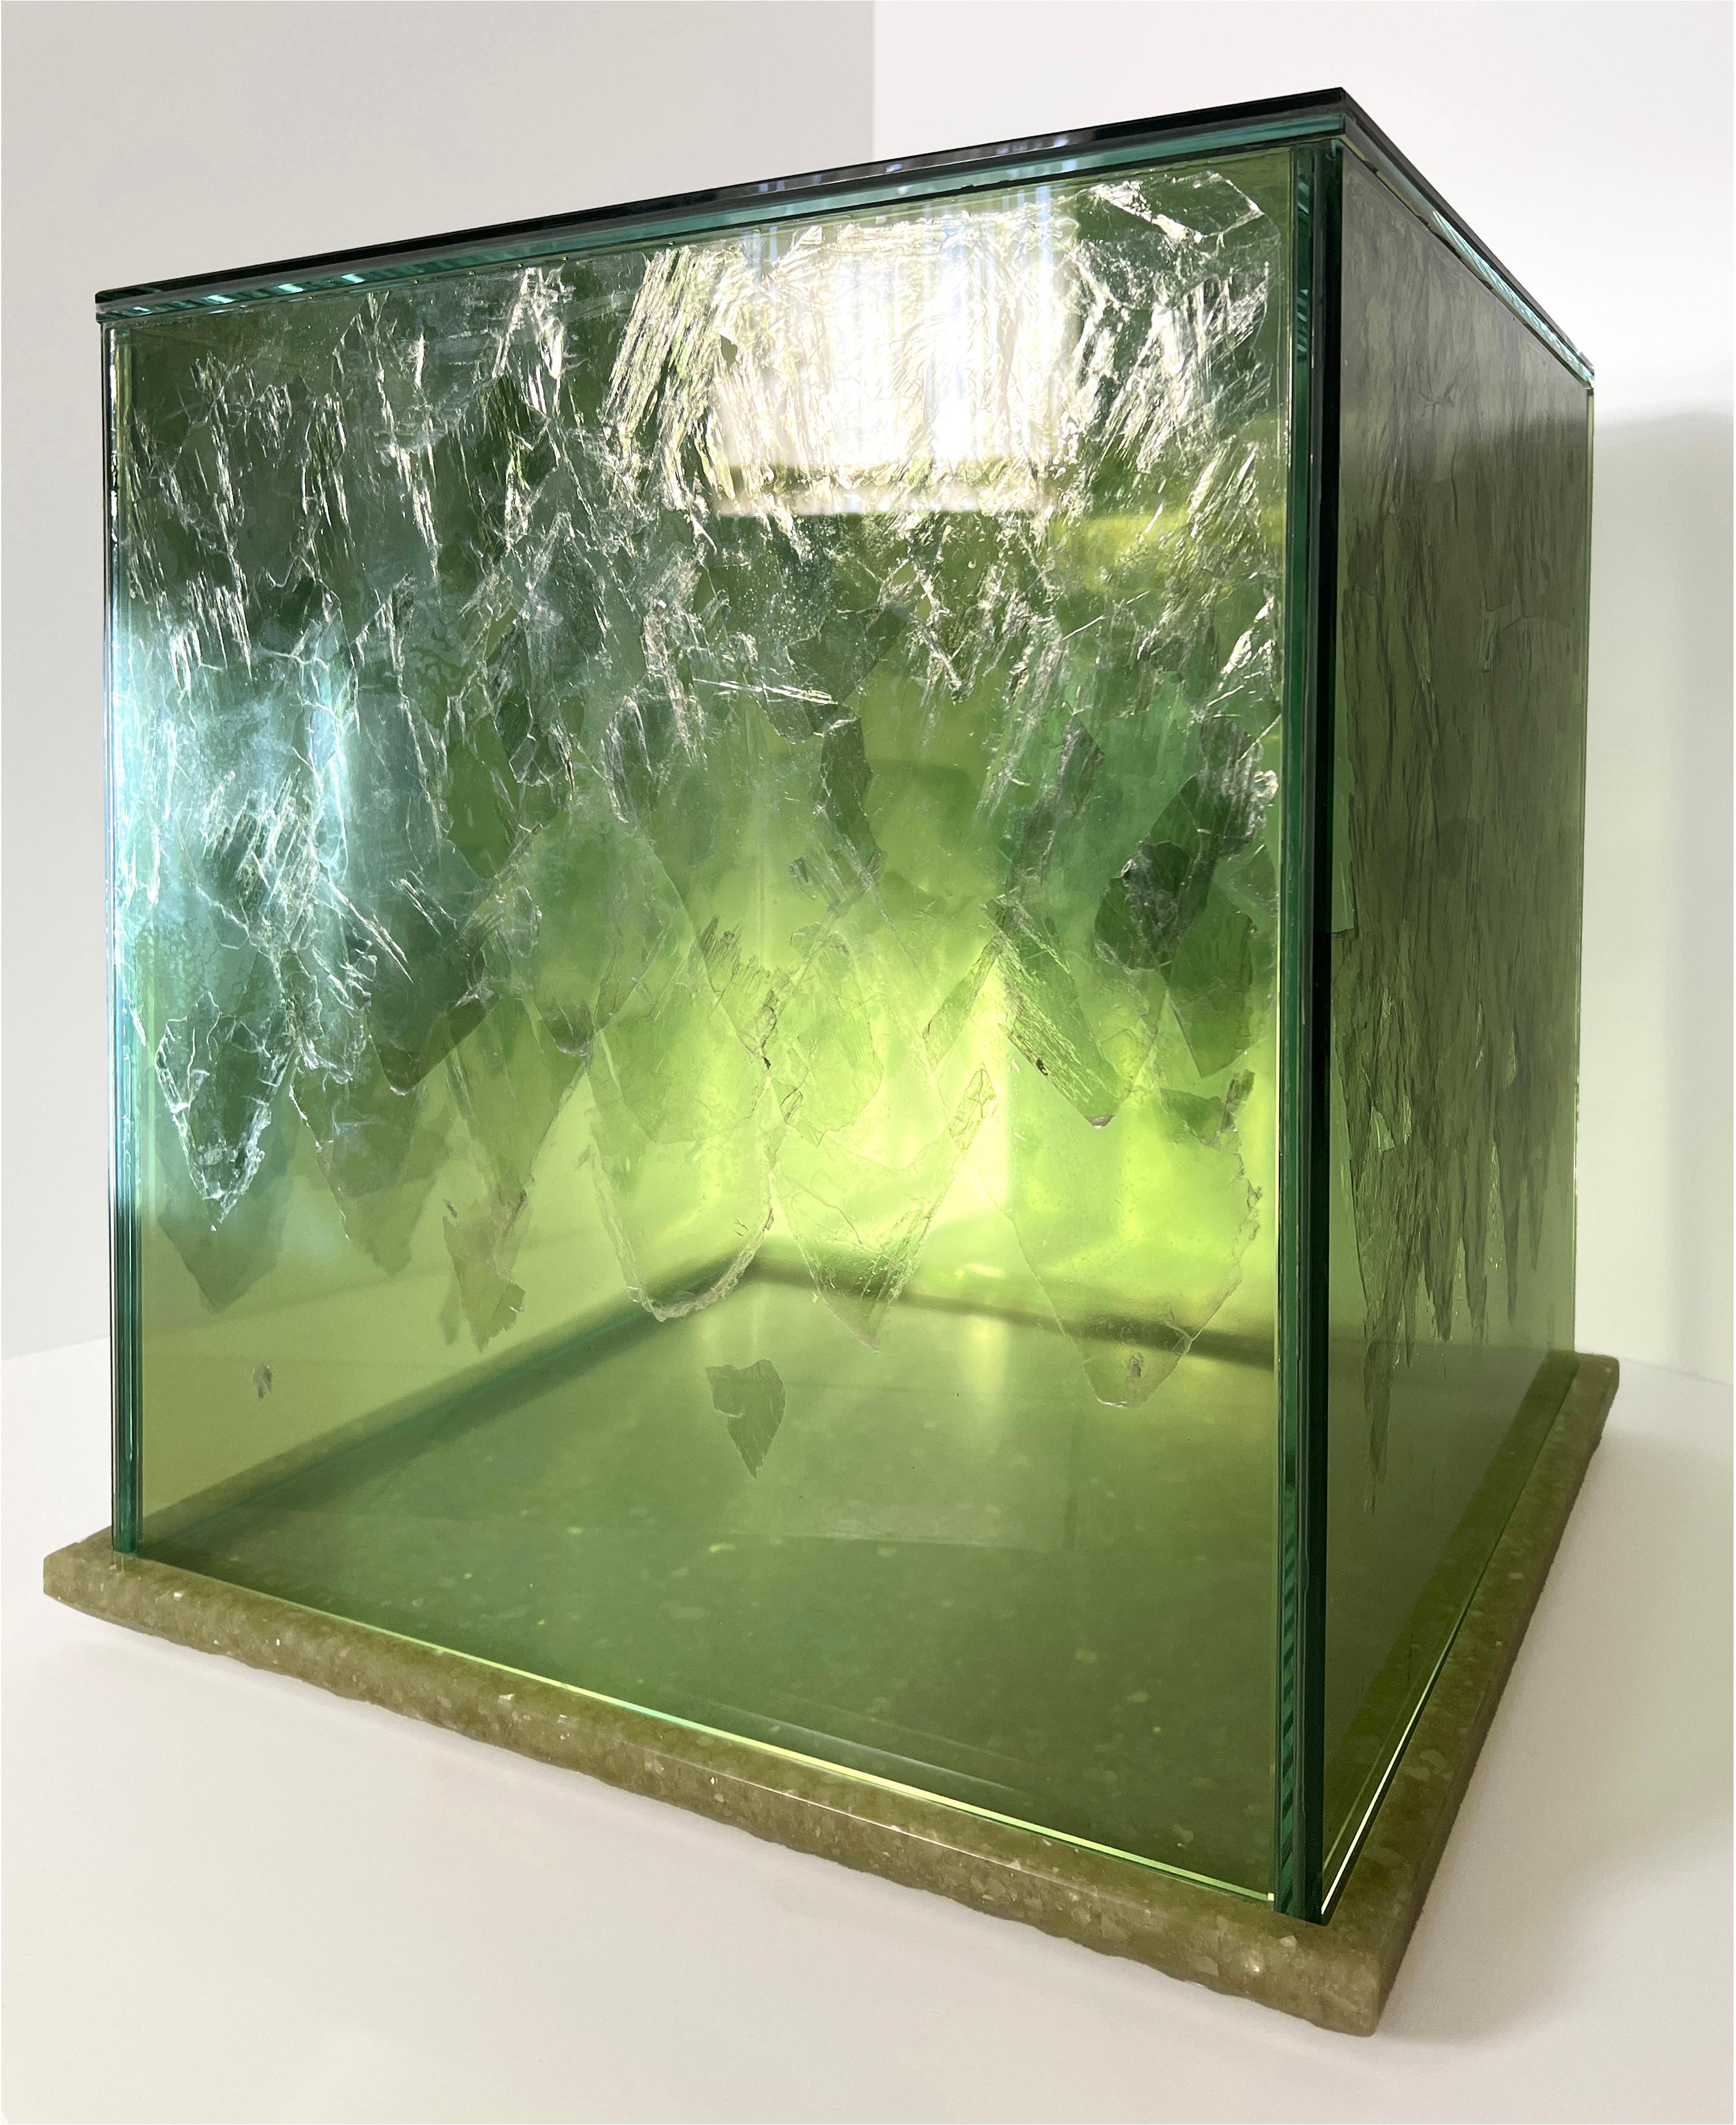 INTERMICA (CHAUSSÉE)
TABLE D'APPOINT, 2023

Verre InterMica® : Verre feuilleté Starphire imprimé par sublimation avec des paillettes de mica vert ; Base : Panneau de résine polyester, 20 x 20 x 20 po.

InterMica est un produit de verre architectural